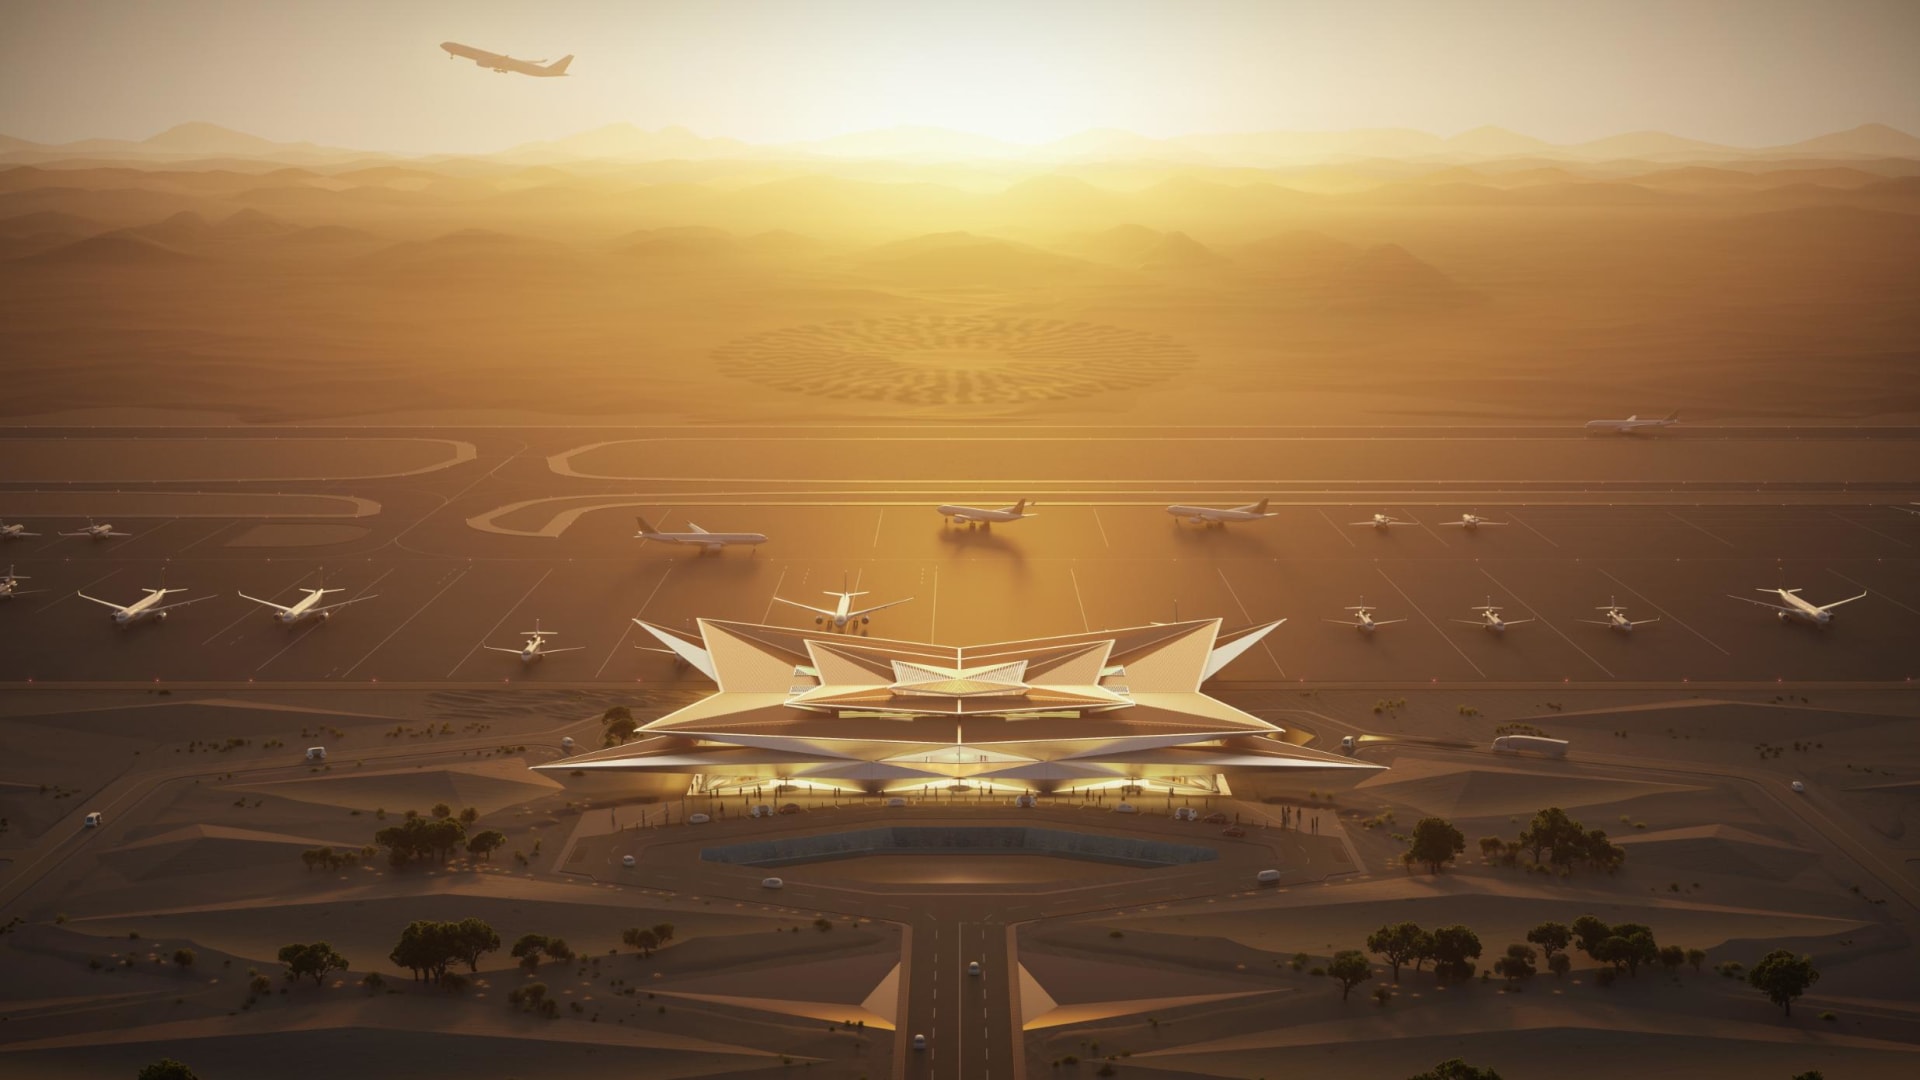 السعودية تكشف النقاب عن تصميم مطار جديد مستوحى من سراب الصحراء.. كيف سيبدو؟